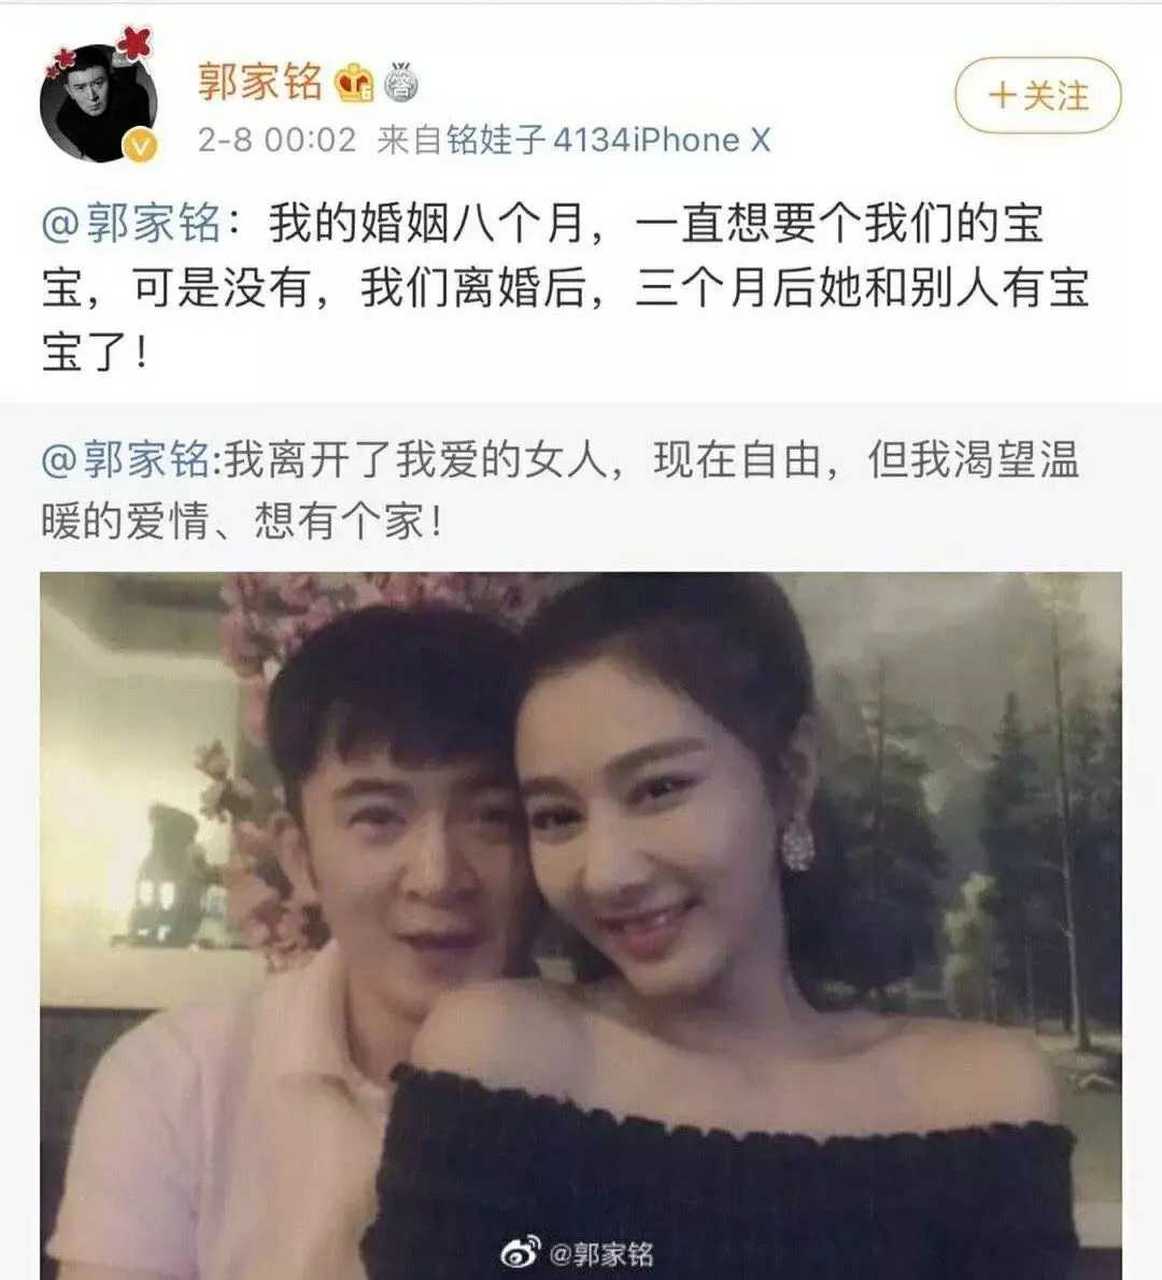 2月7日晚,演员郭家铭晒出了与前妻的一张合影宣布离婚,同时他还发布了